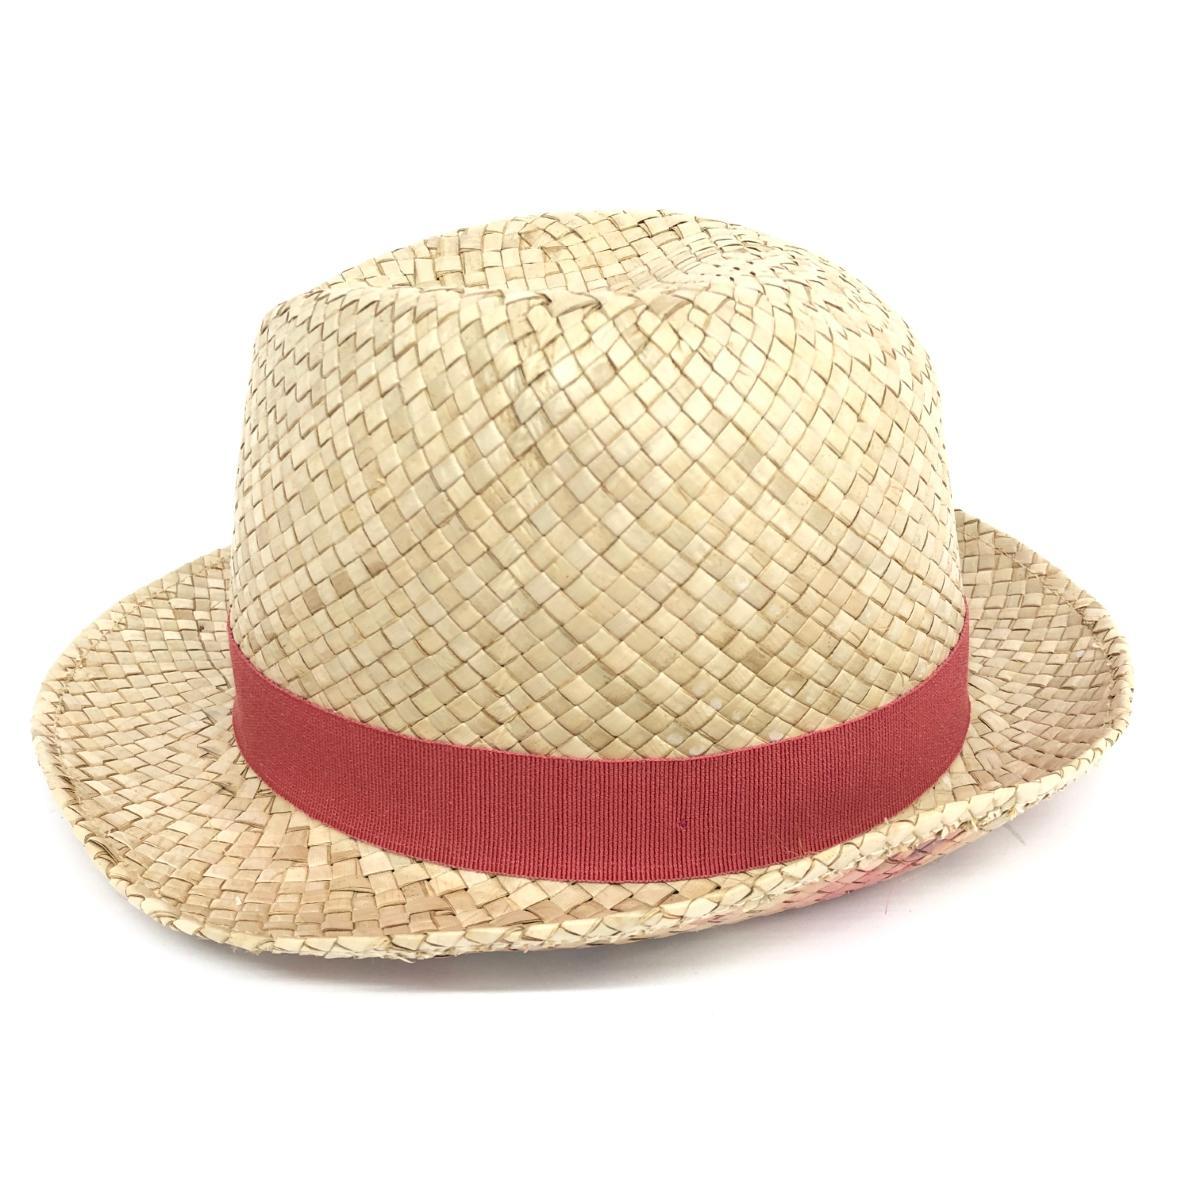 ◆Paul Smith collection ポールスミス　コレクション 麦わら帽子 ◆ ベージュ ユニセックス 帽子 ハット hat 服飾小物_画像2